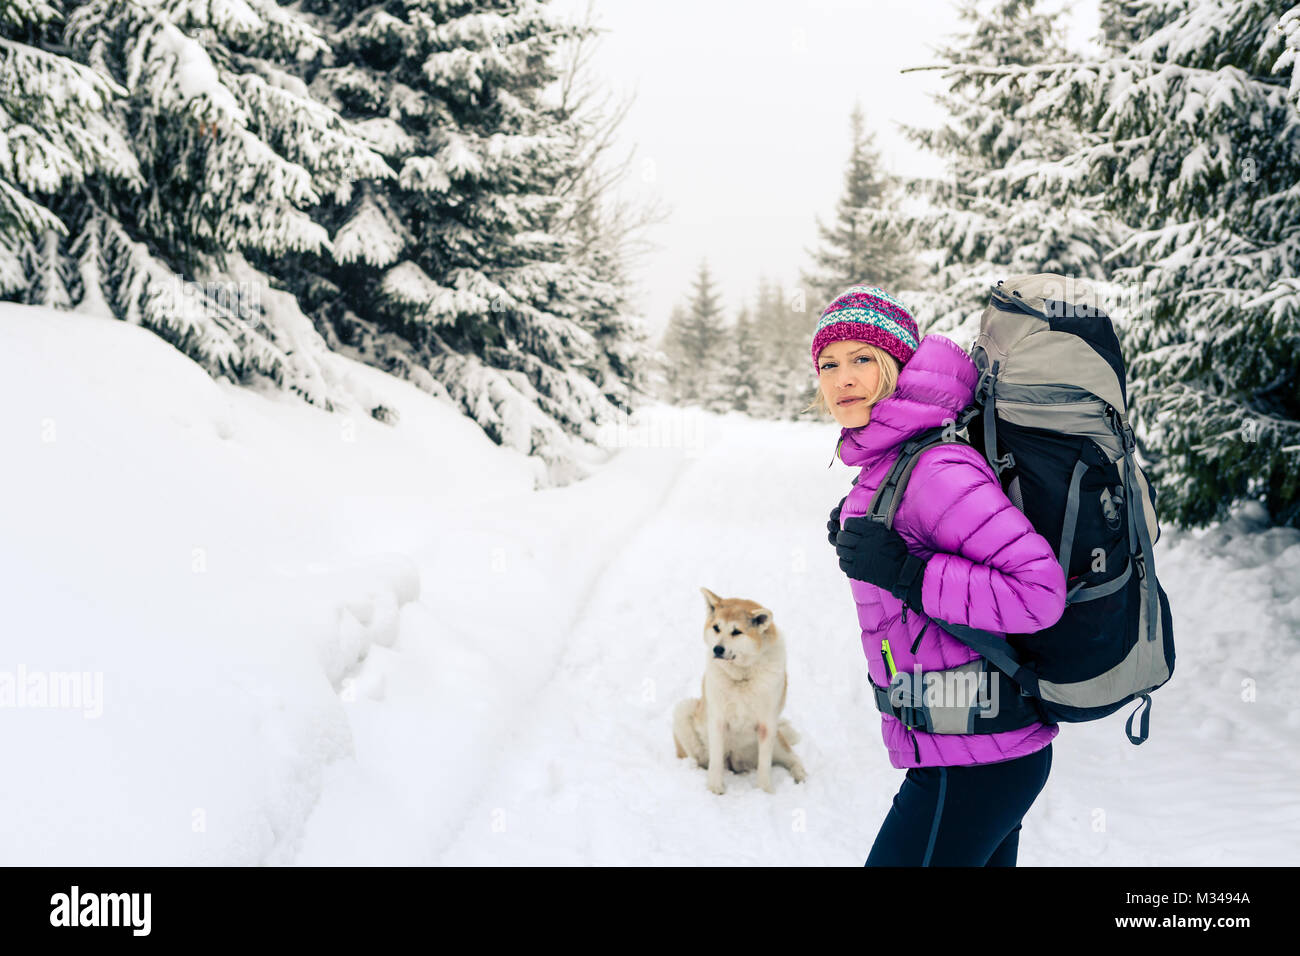 Frau wandern in weiss Winter Forest Woods mit Akita Hund. Erholung Fitness und gesunde Lebensweise draussen in der Natur. Motivation und Inspiration wi Stockfoto